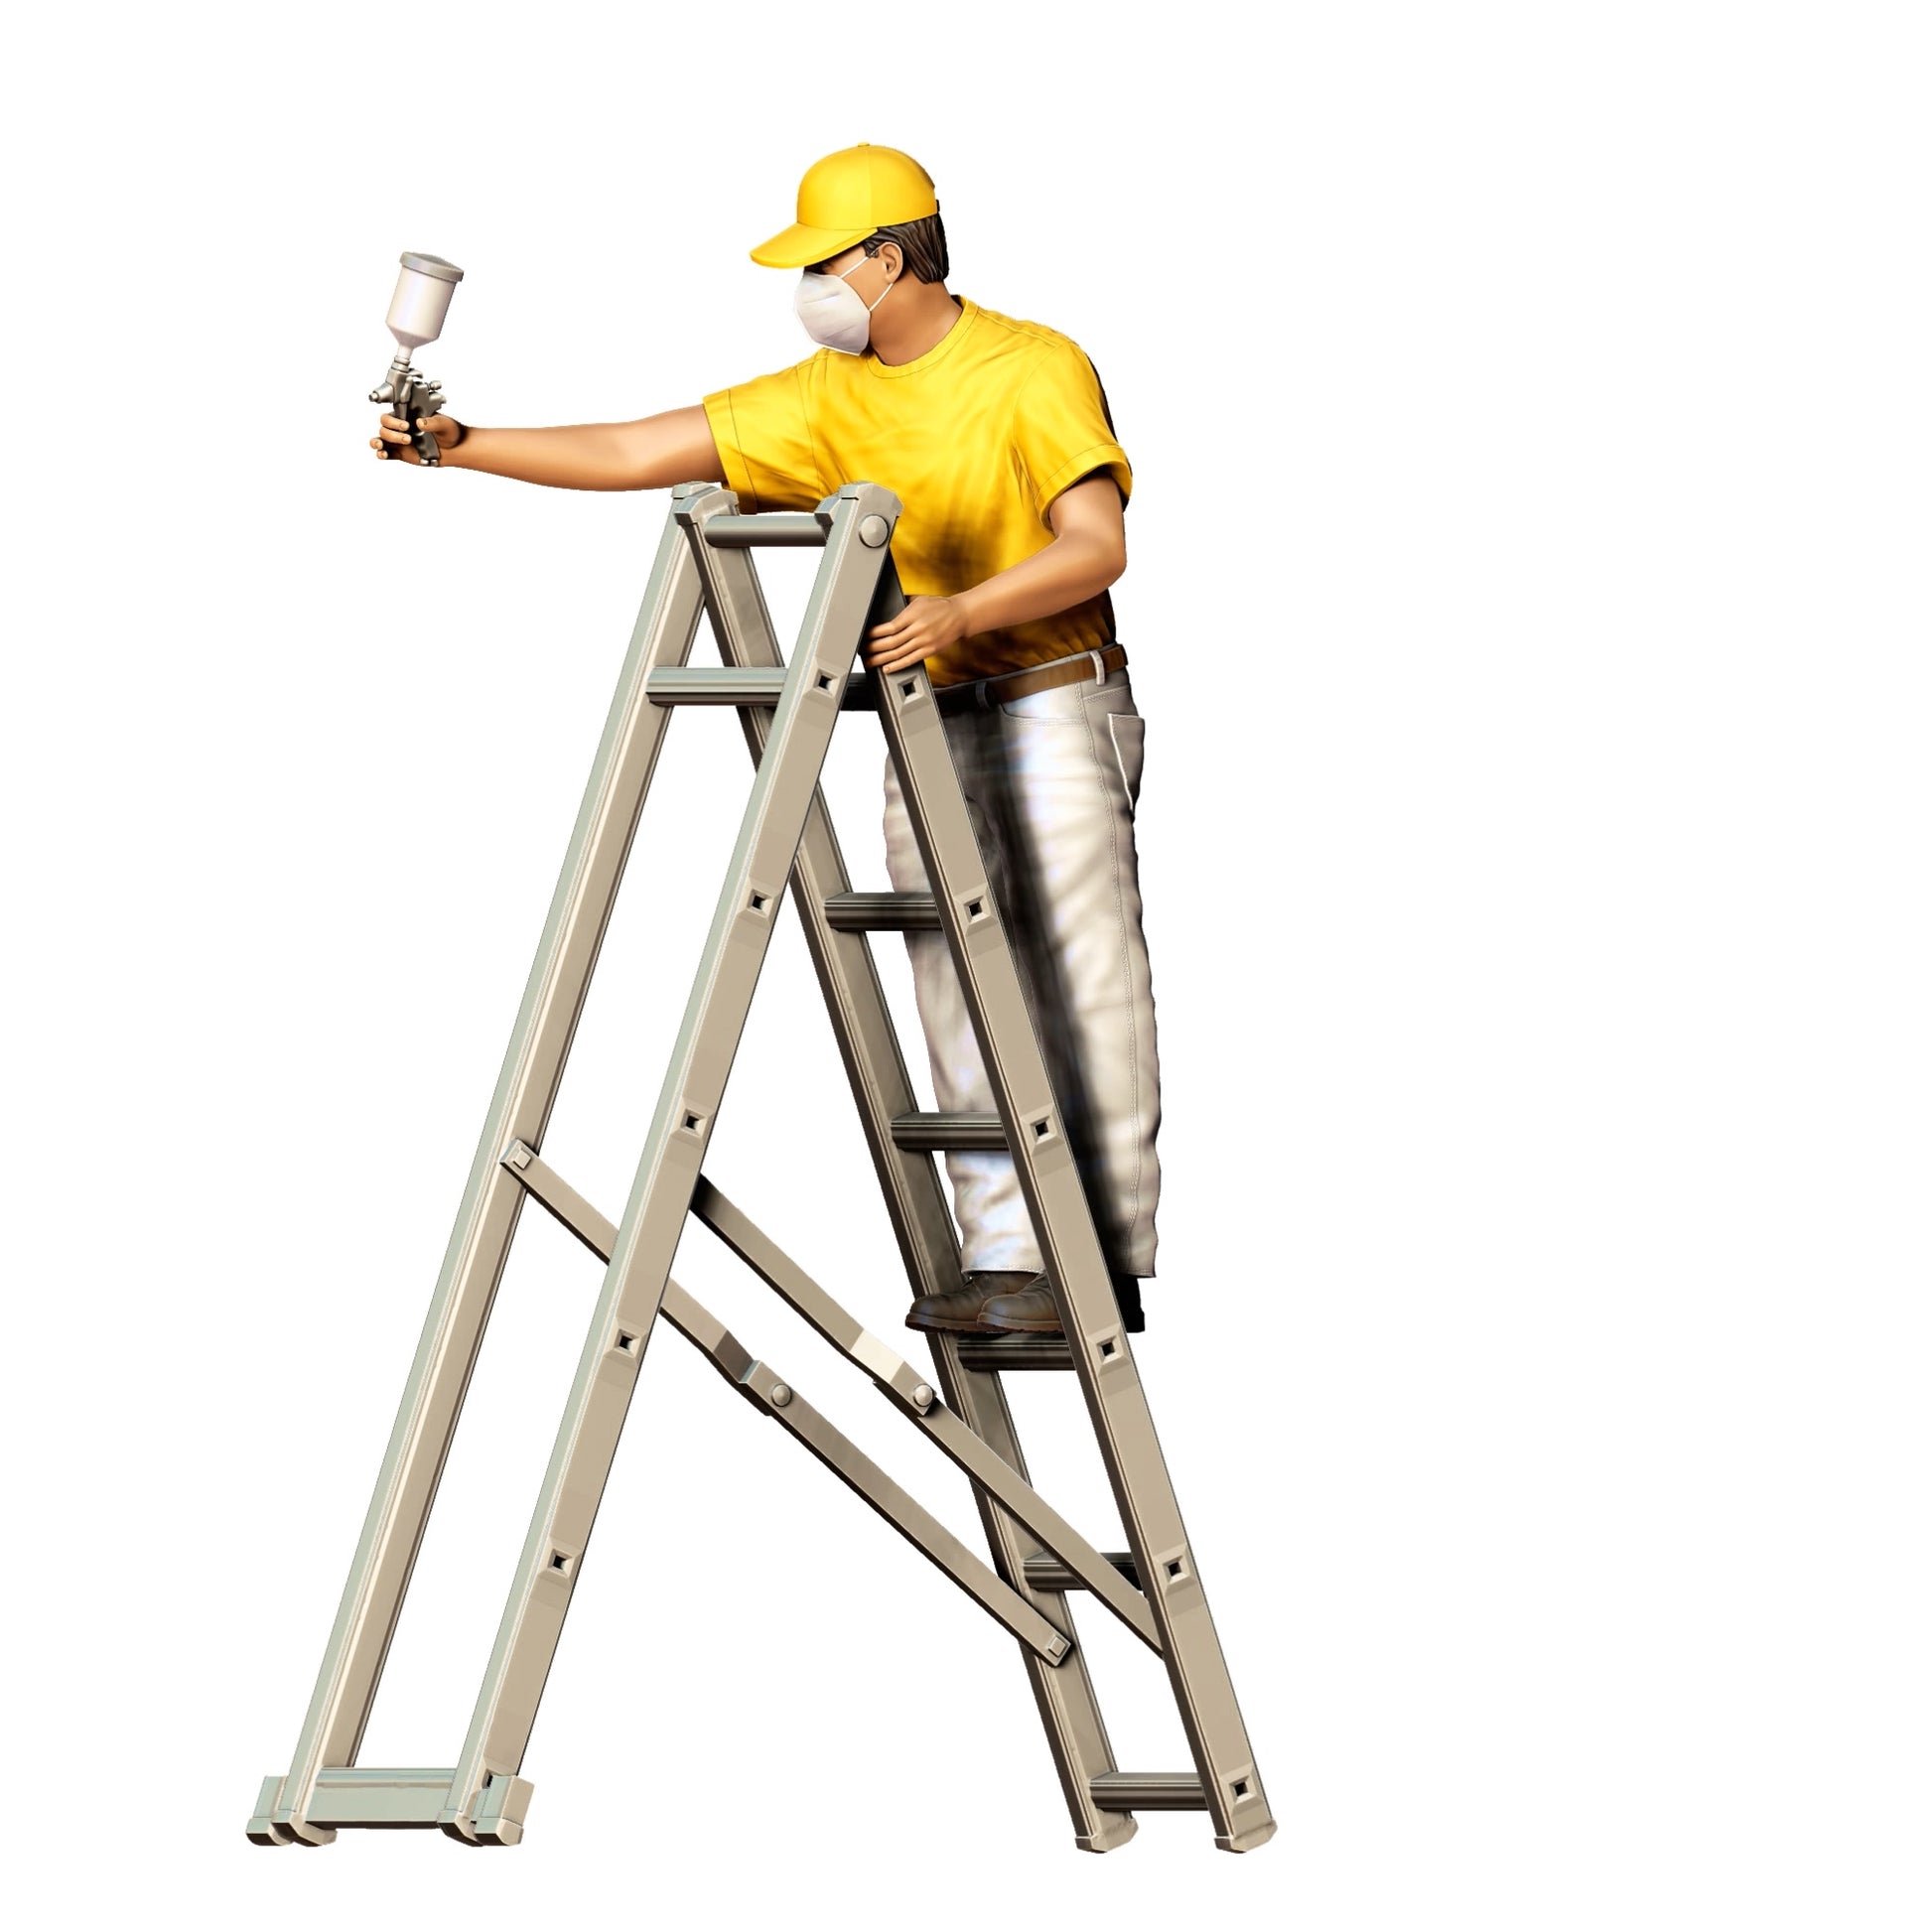 Produktfoto  0: Maler/ Lackierer mit Spraypistole - Handwerker auf Leiter